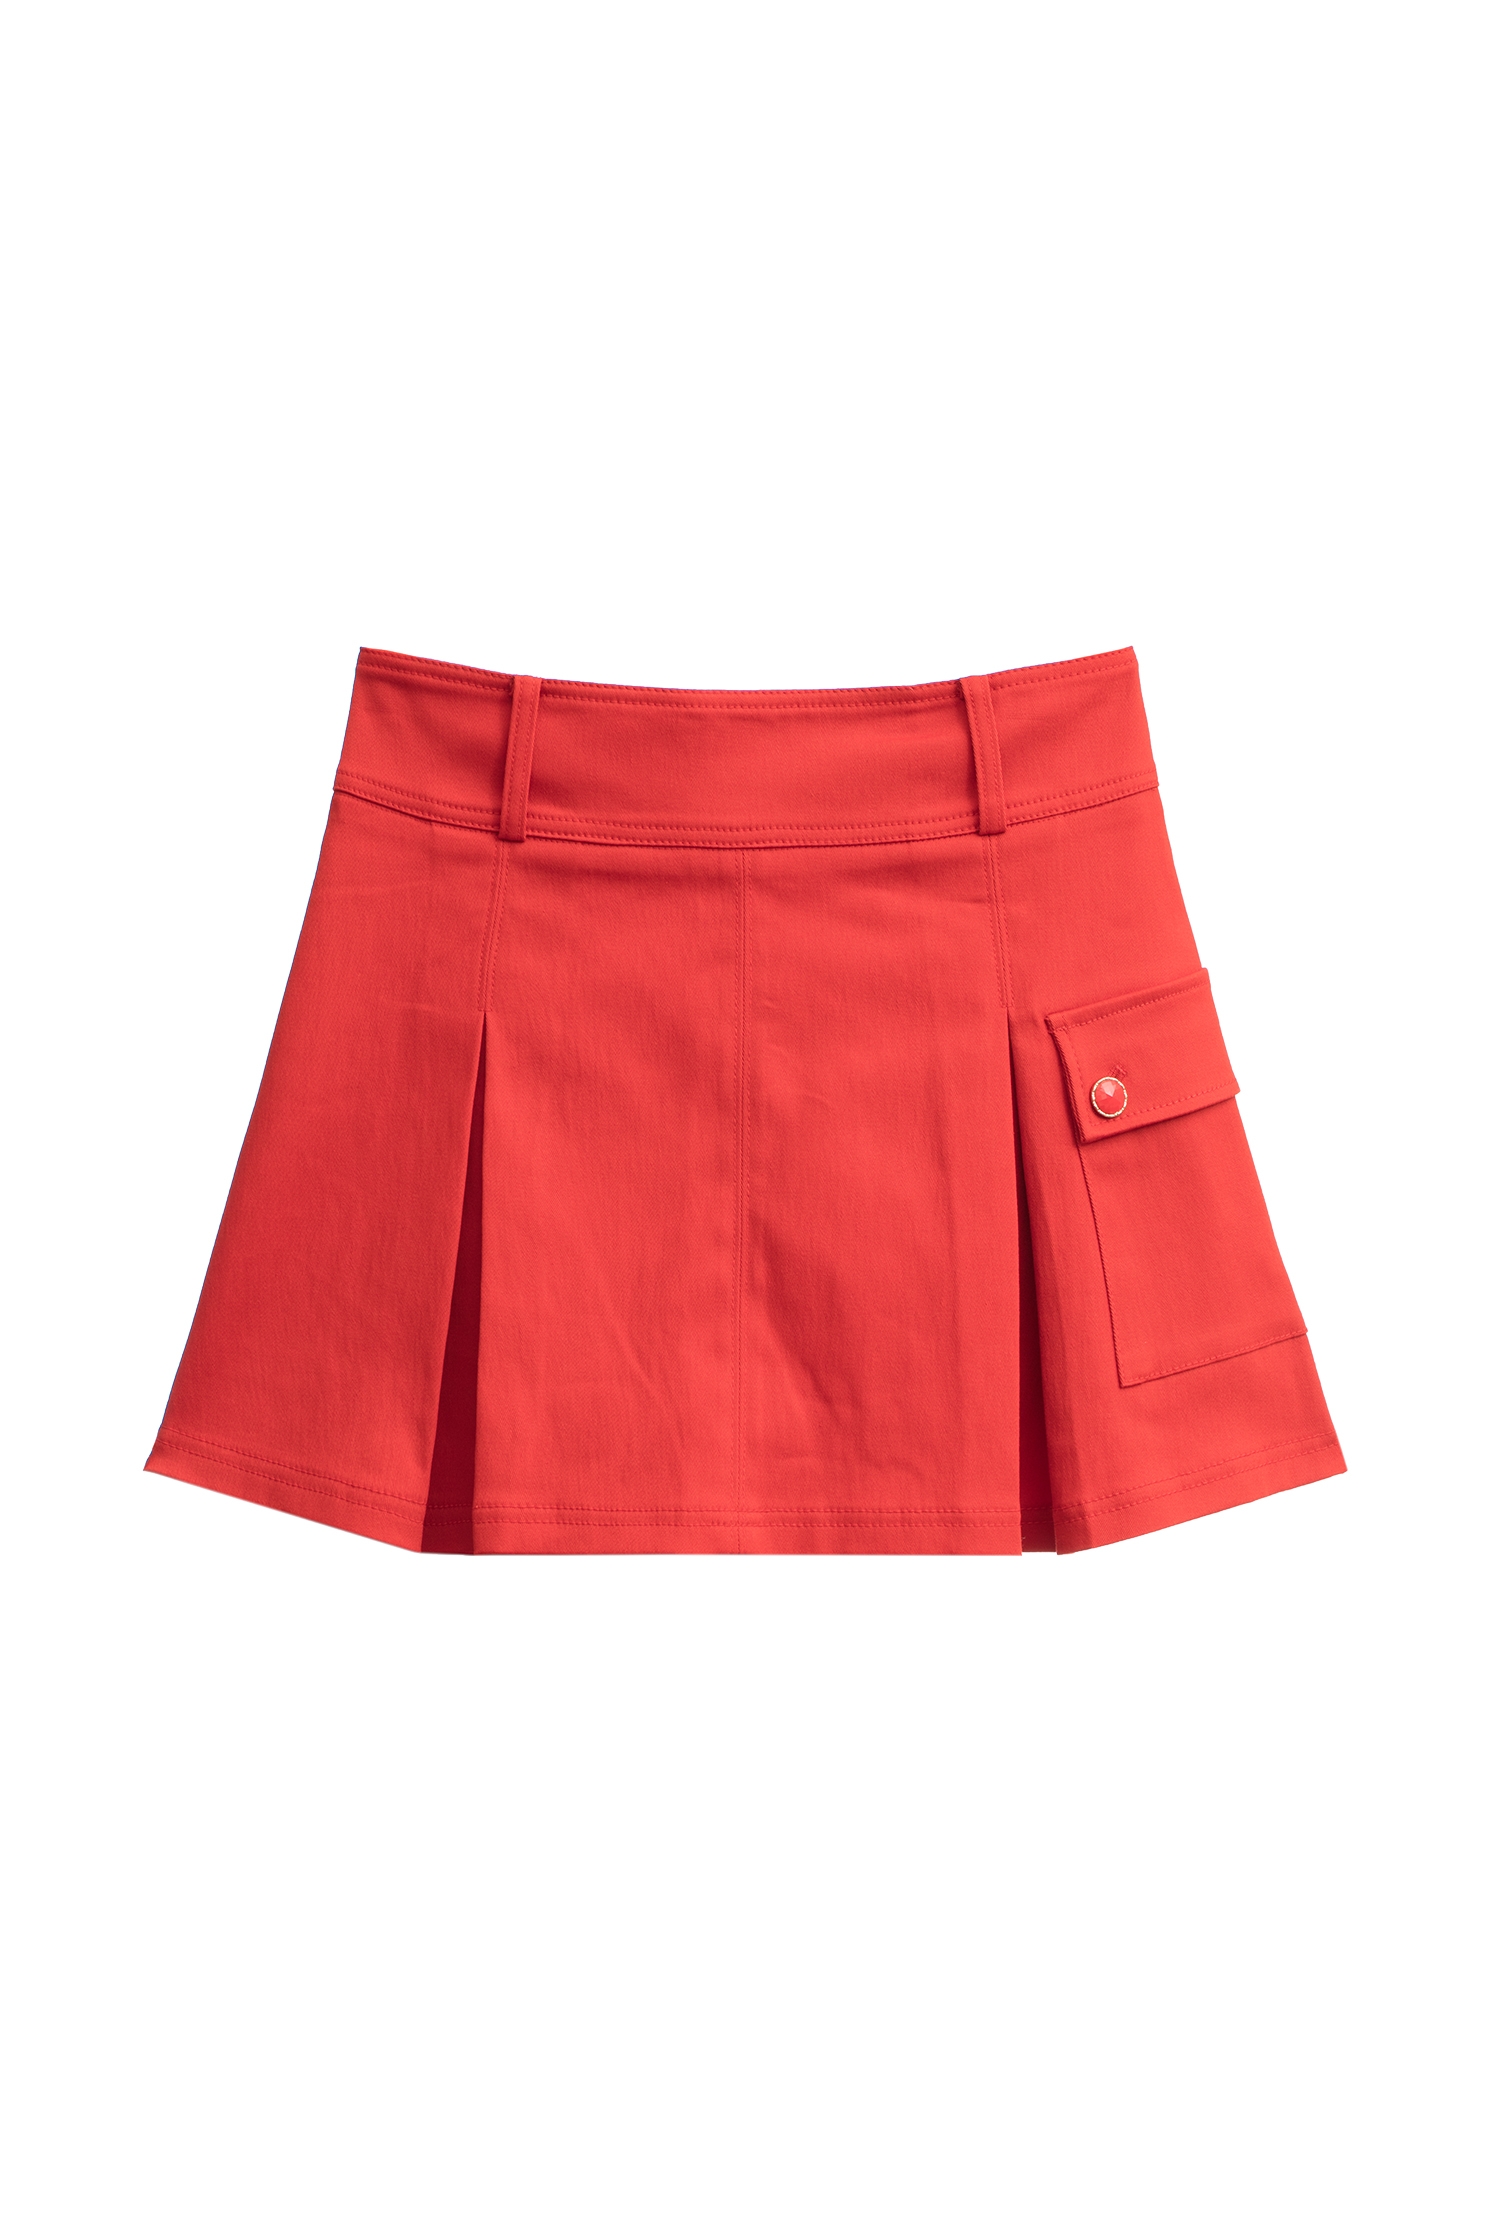 優雅深紅色短裙優雅深紅色短裙,人氣商品,春夏穿搭,短裙,短褲